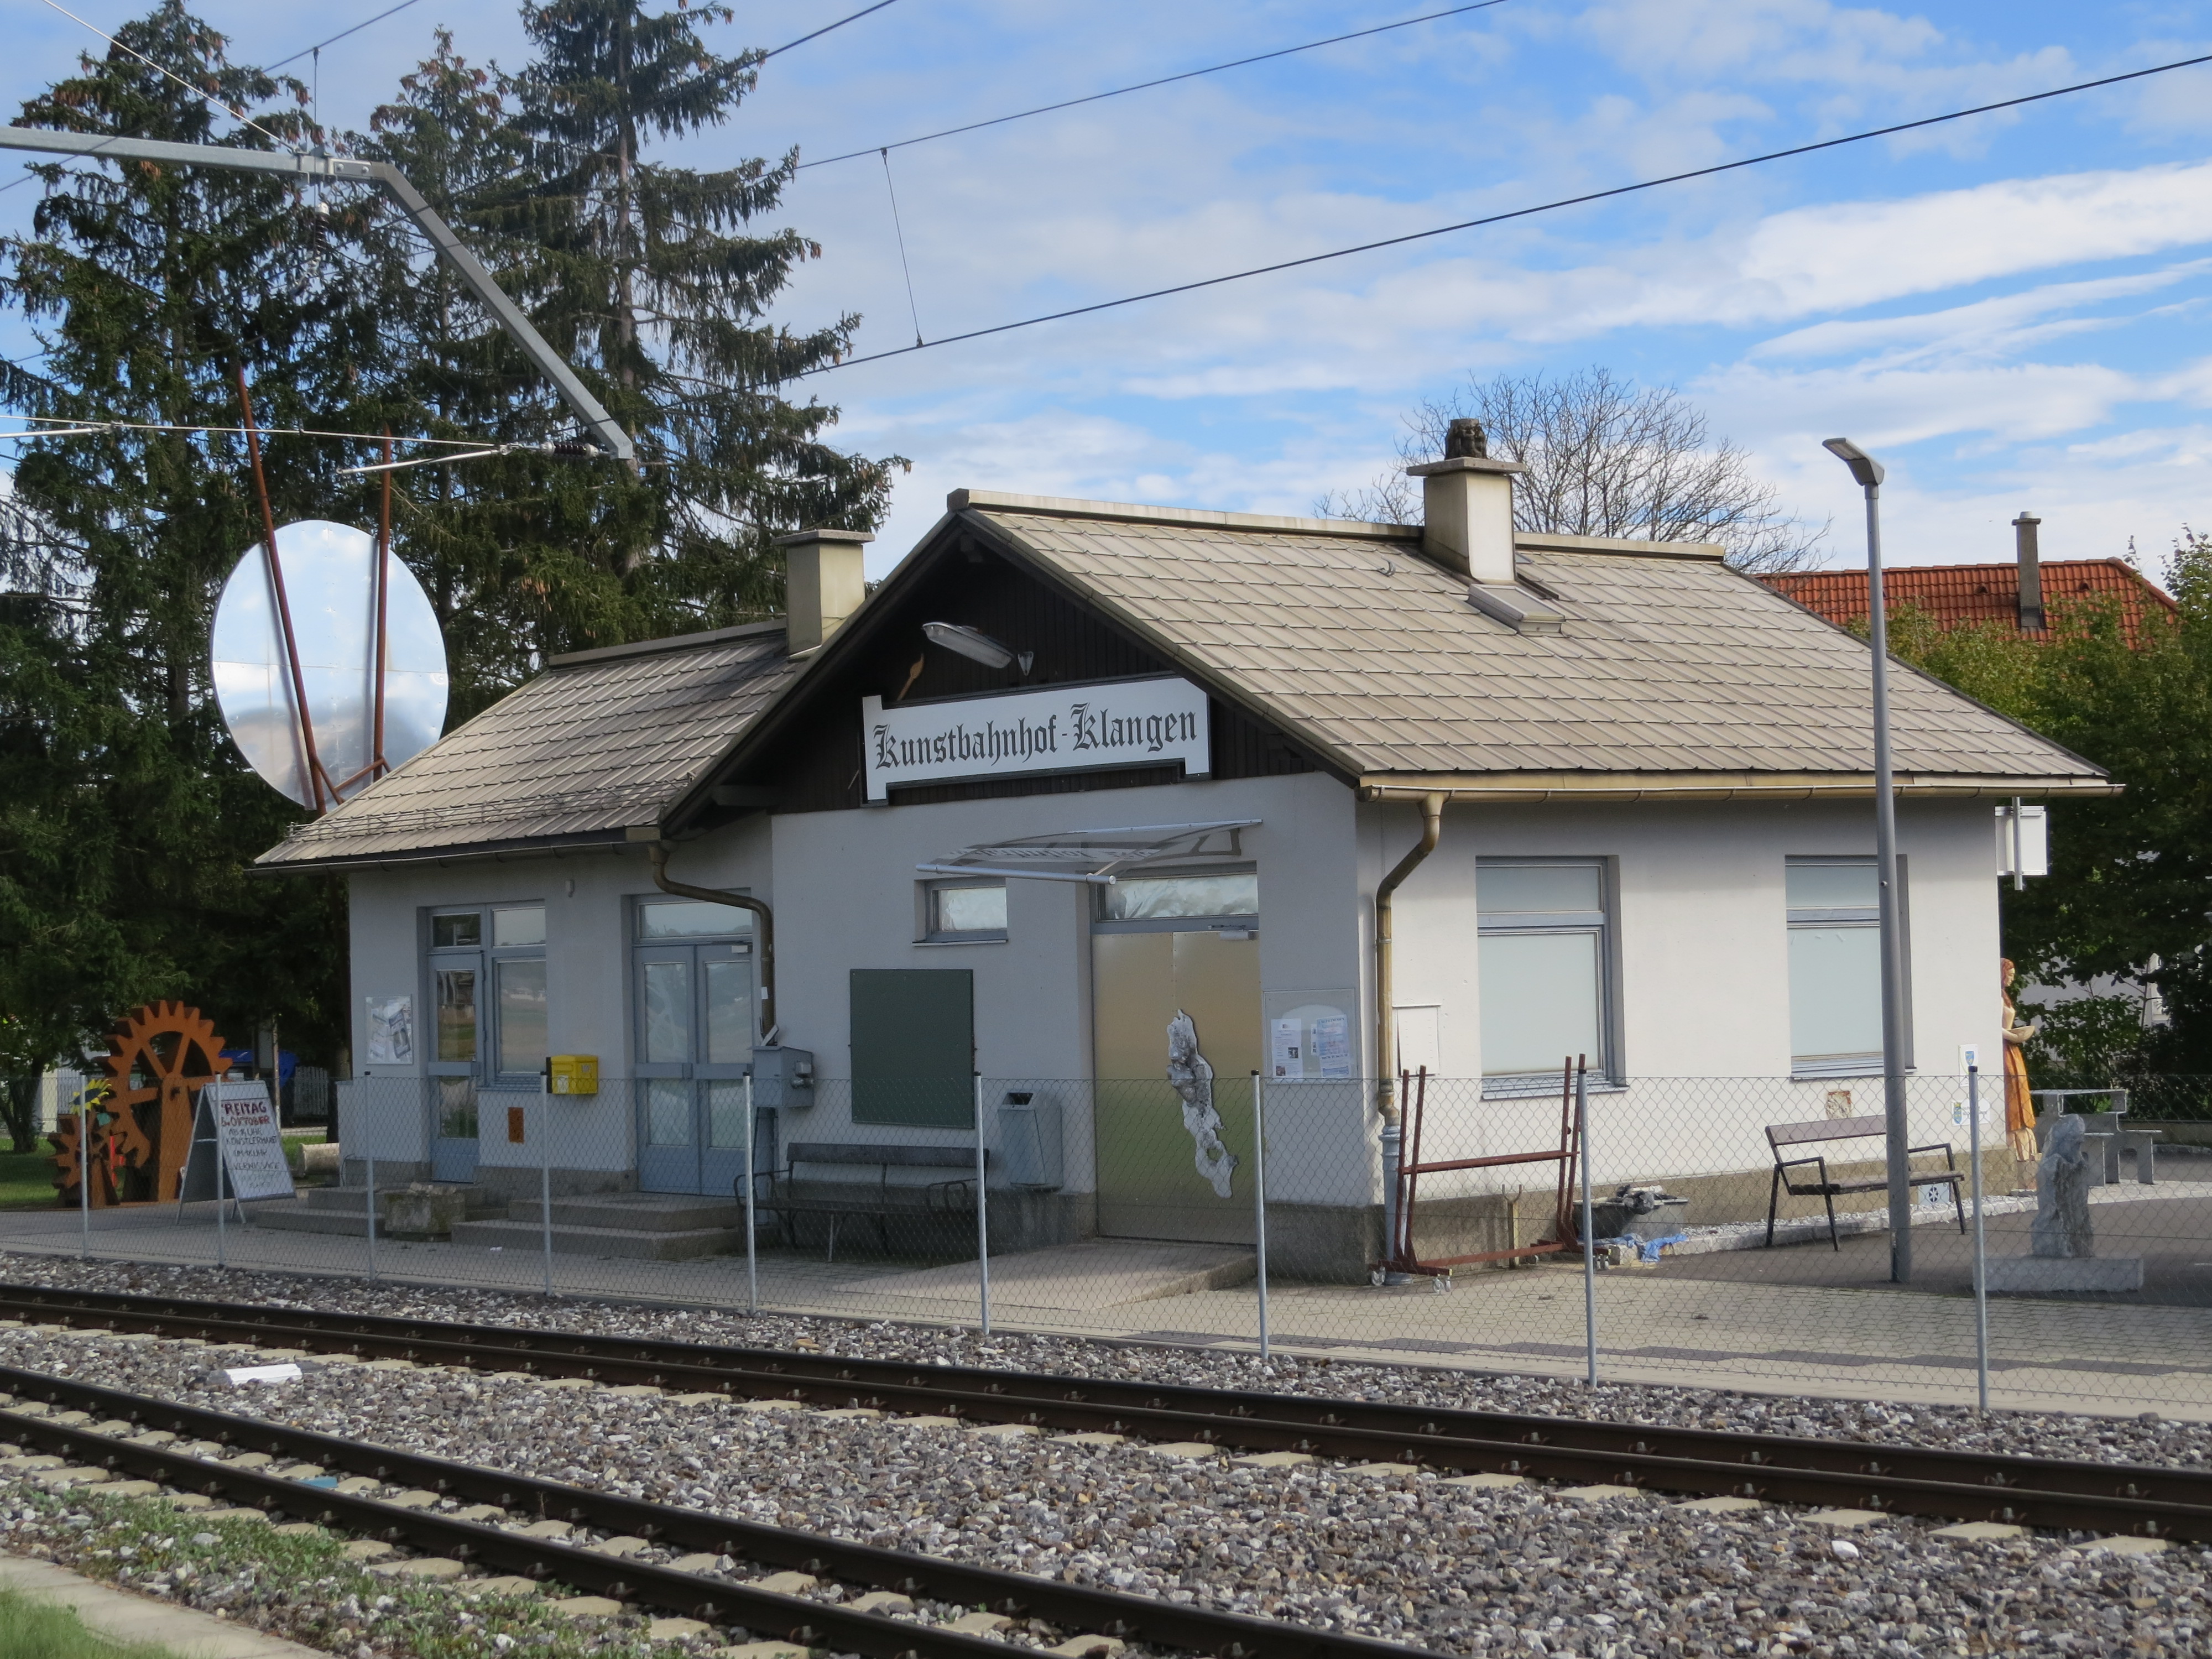 2017-10-05 (325) Bahnhof Klangen